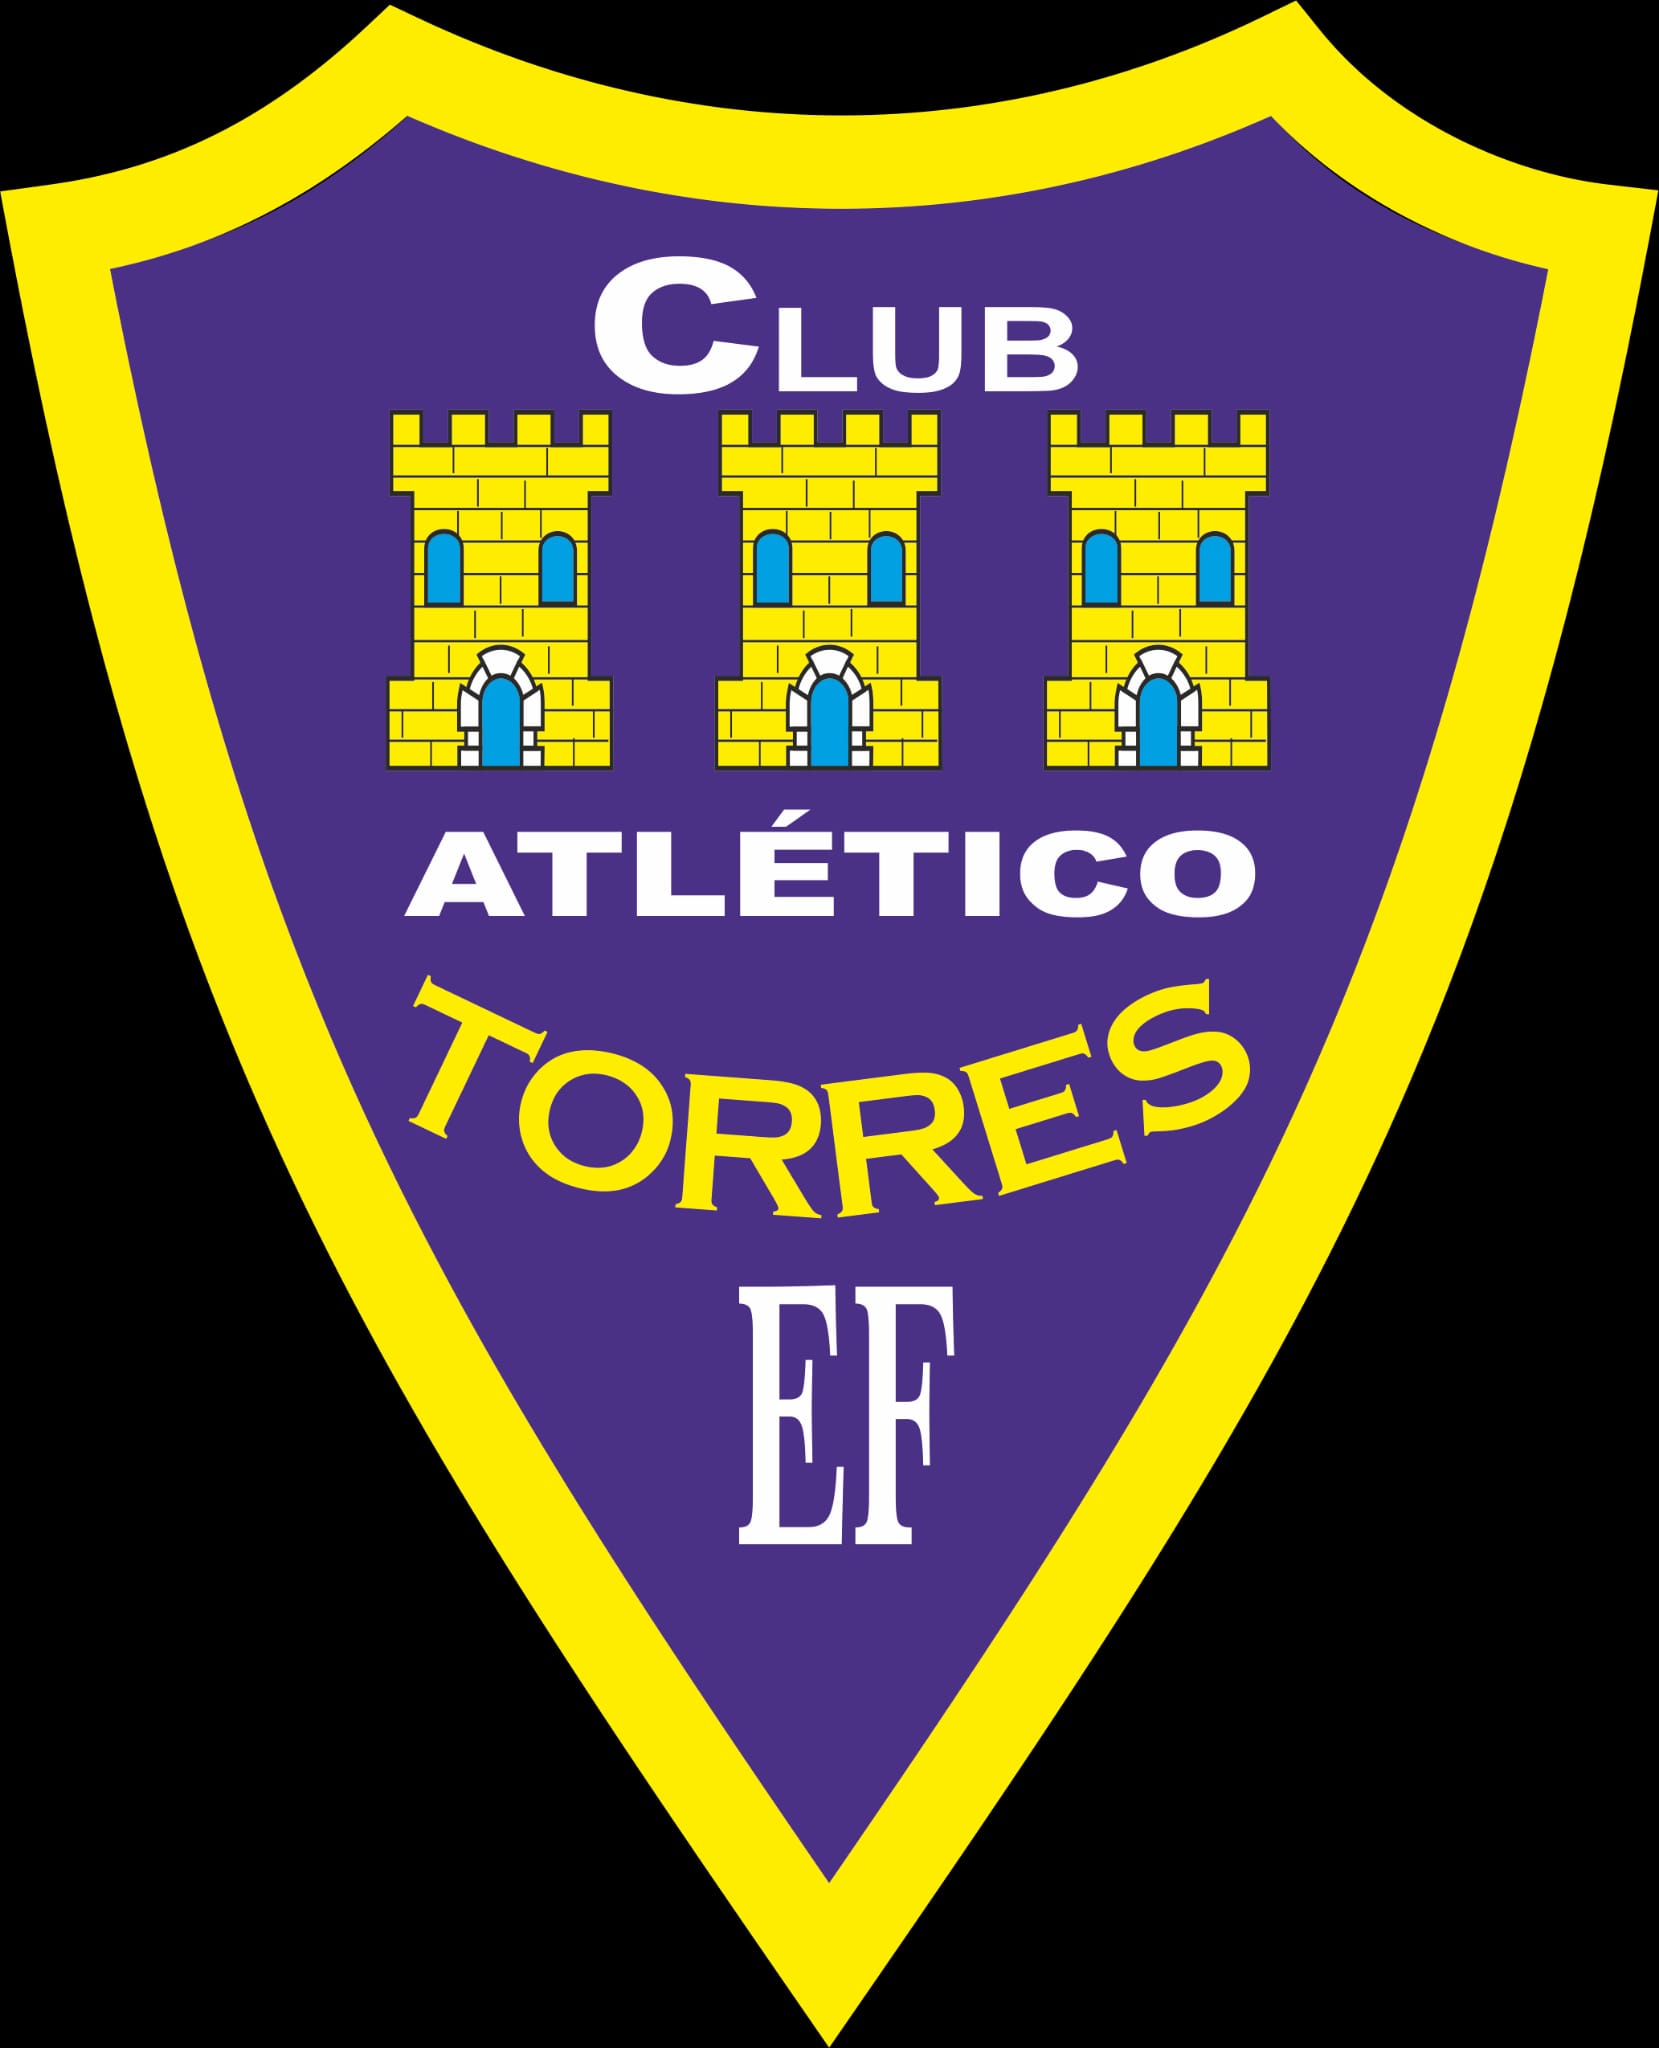  CLUB ATLETICO TORRES